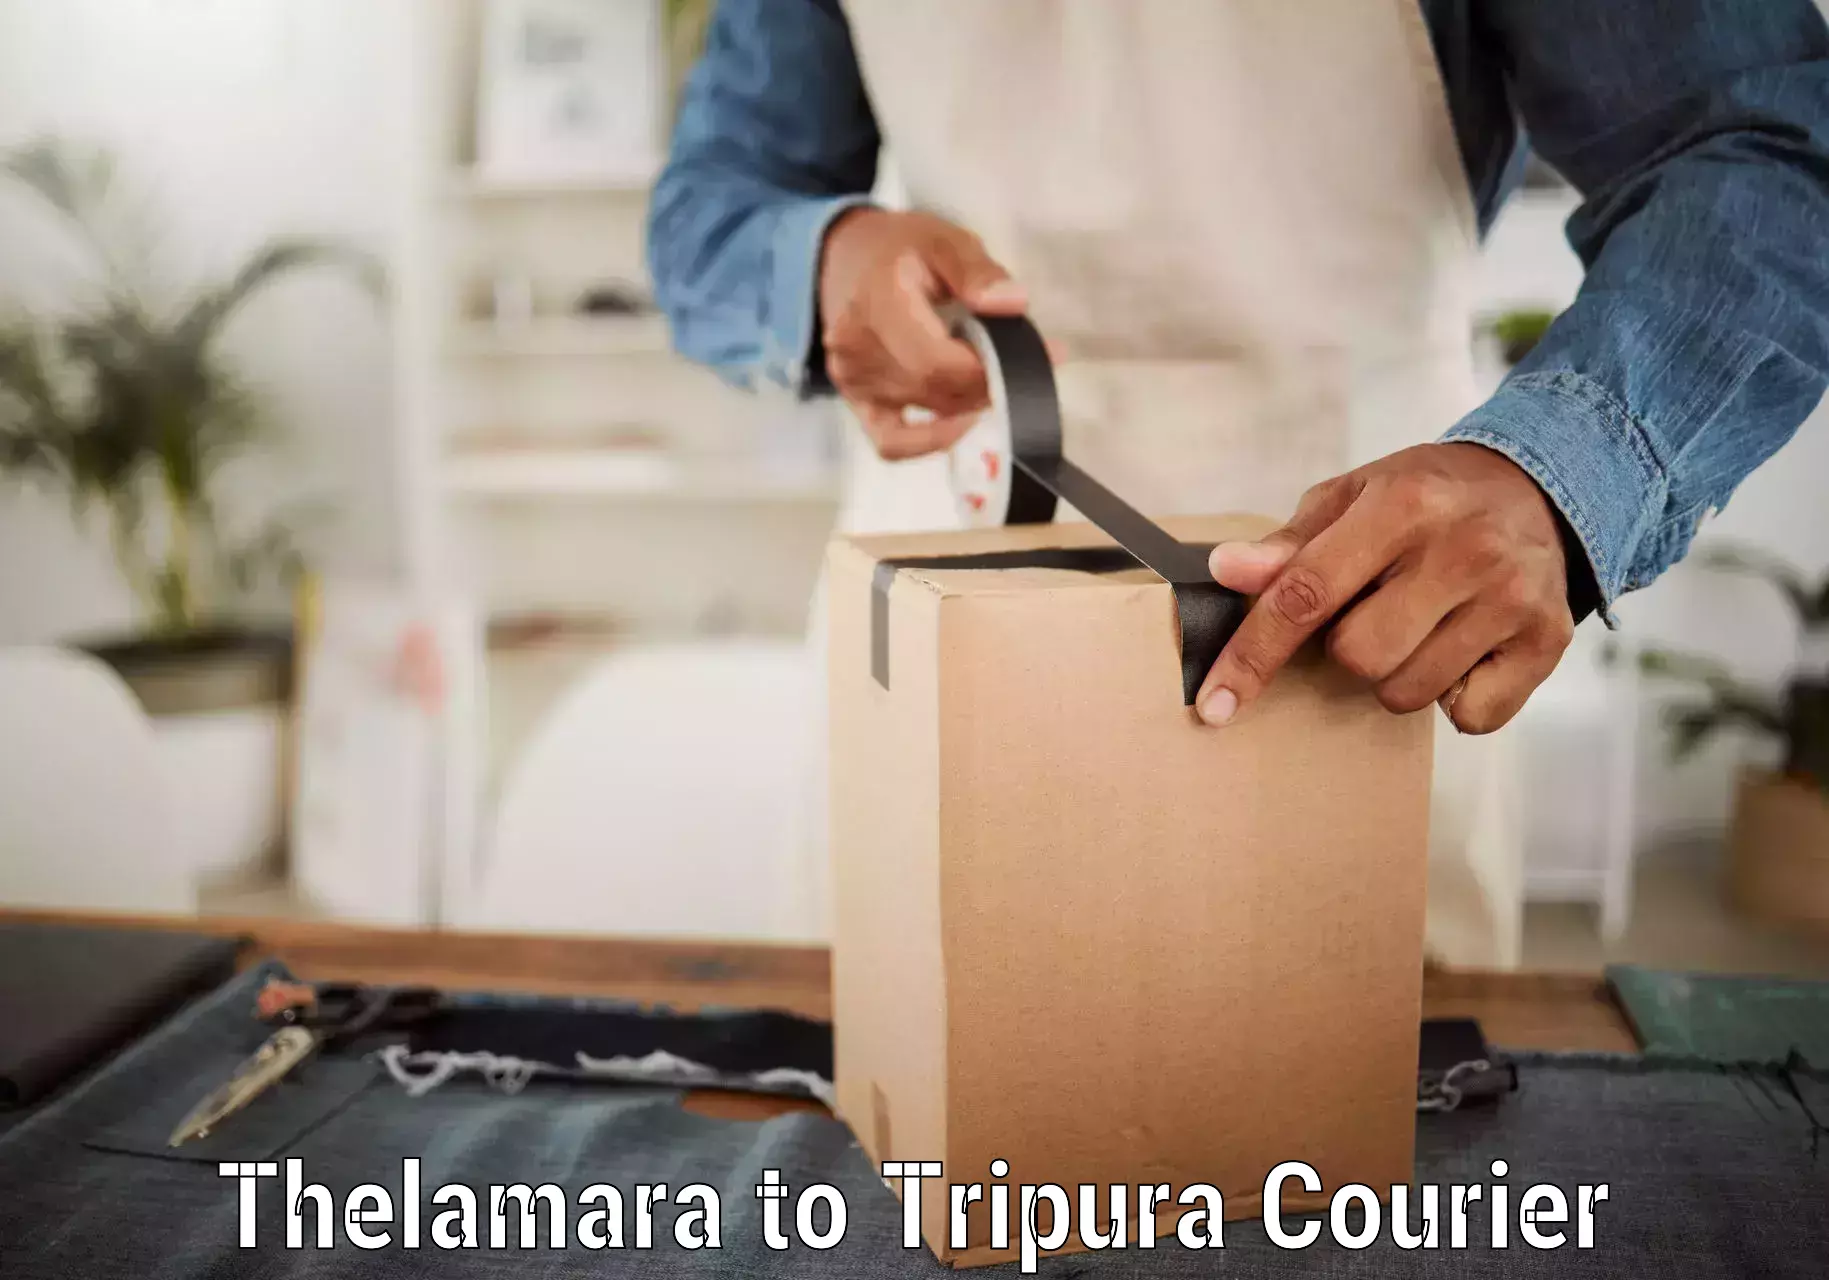 Efficient cargo handling Thelamara to Teliamura